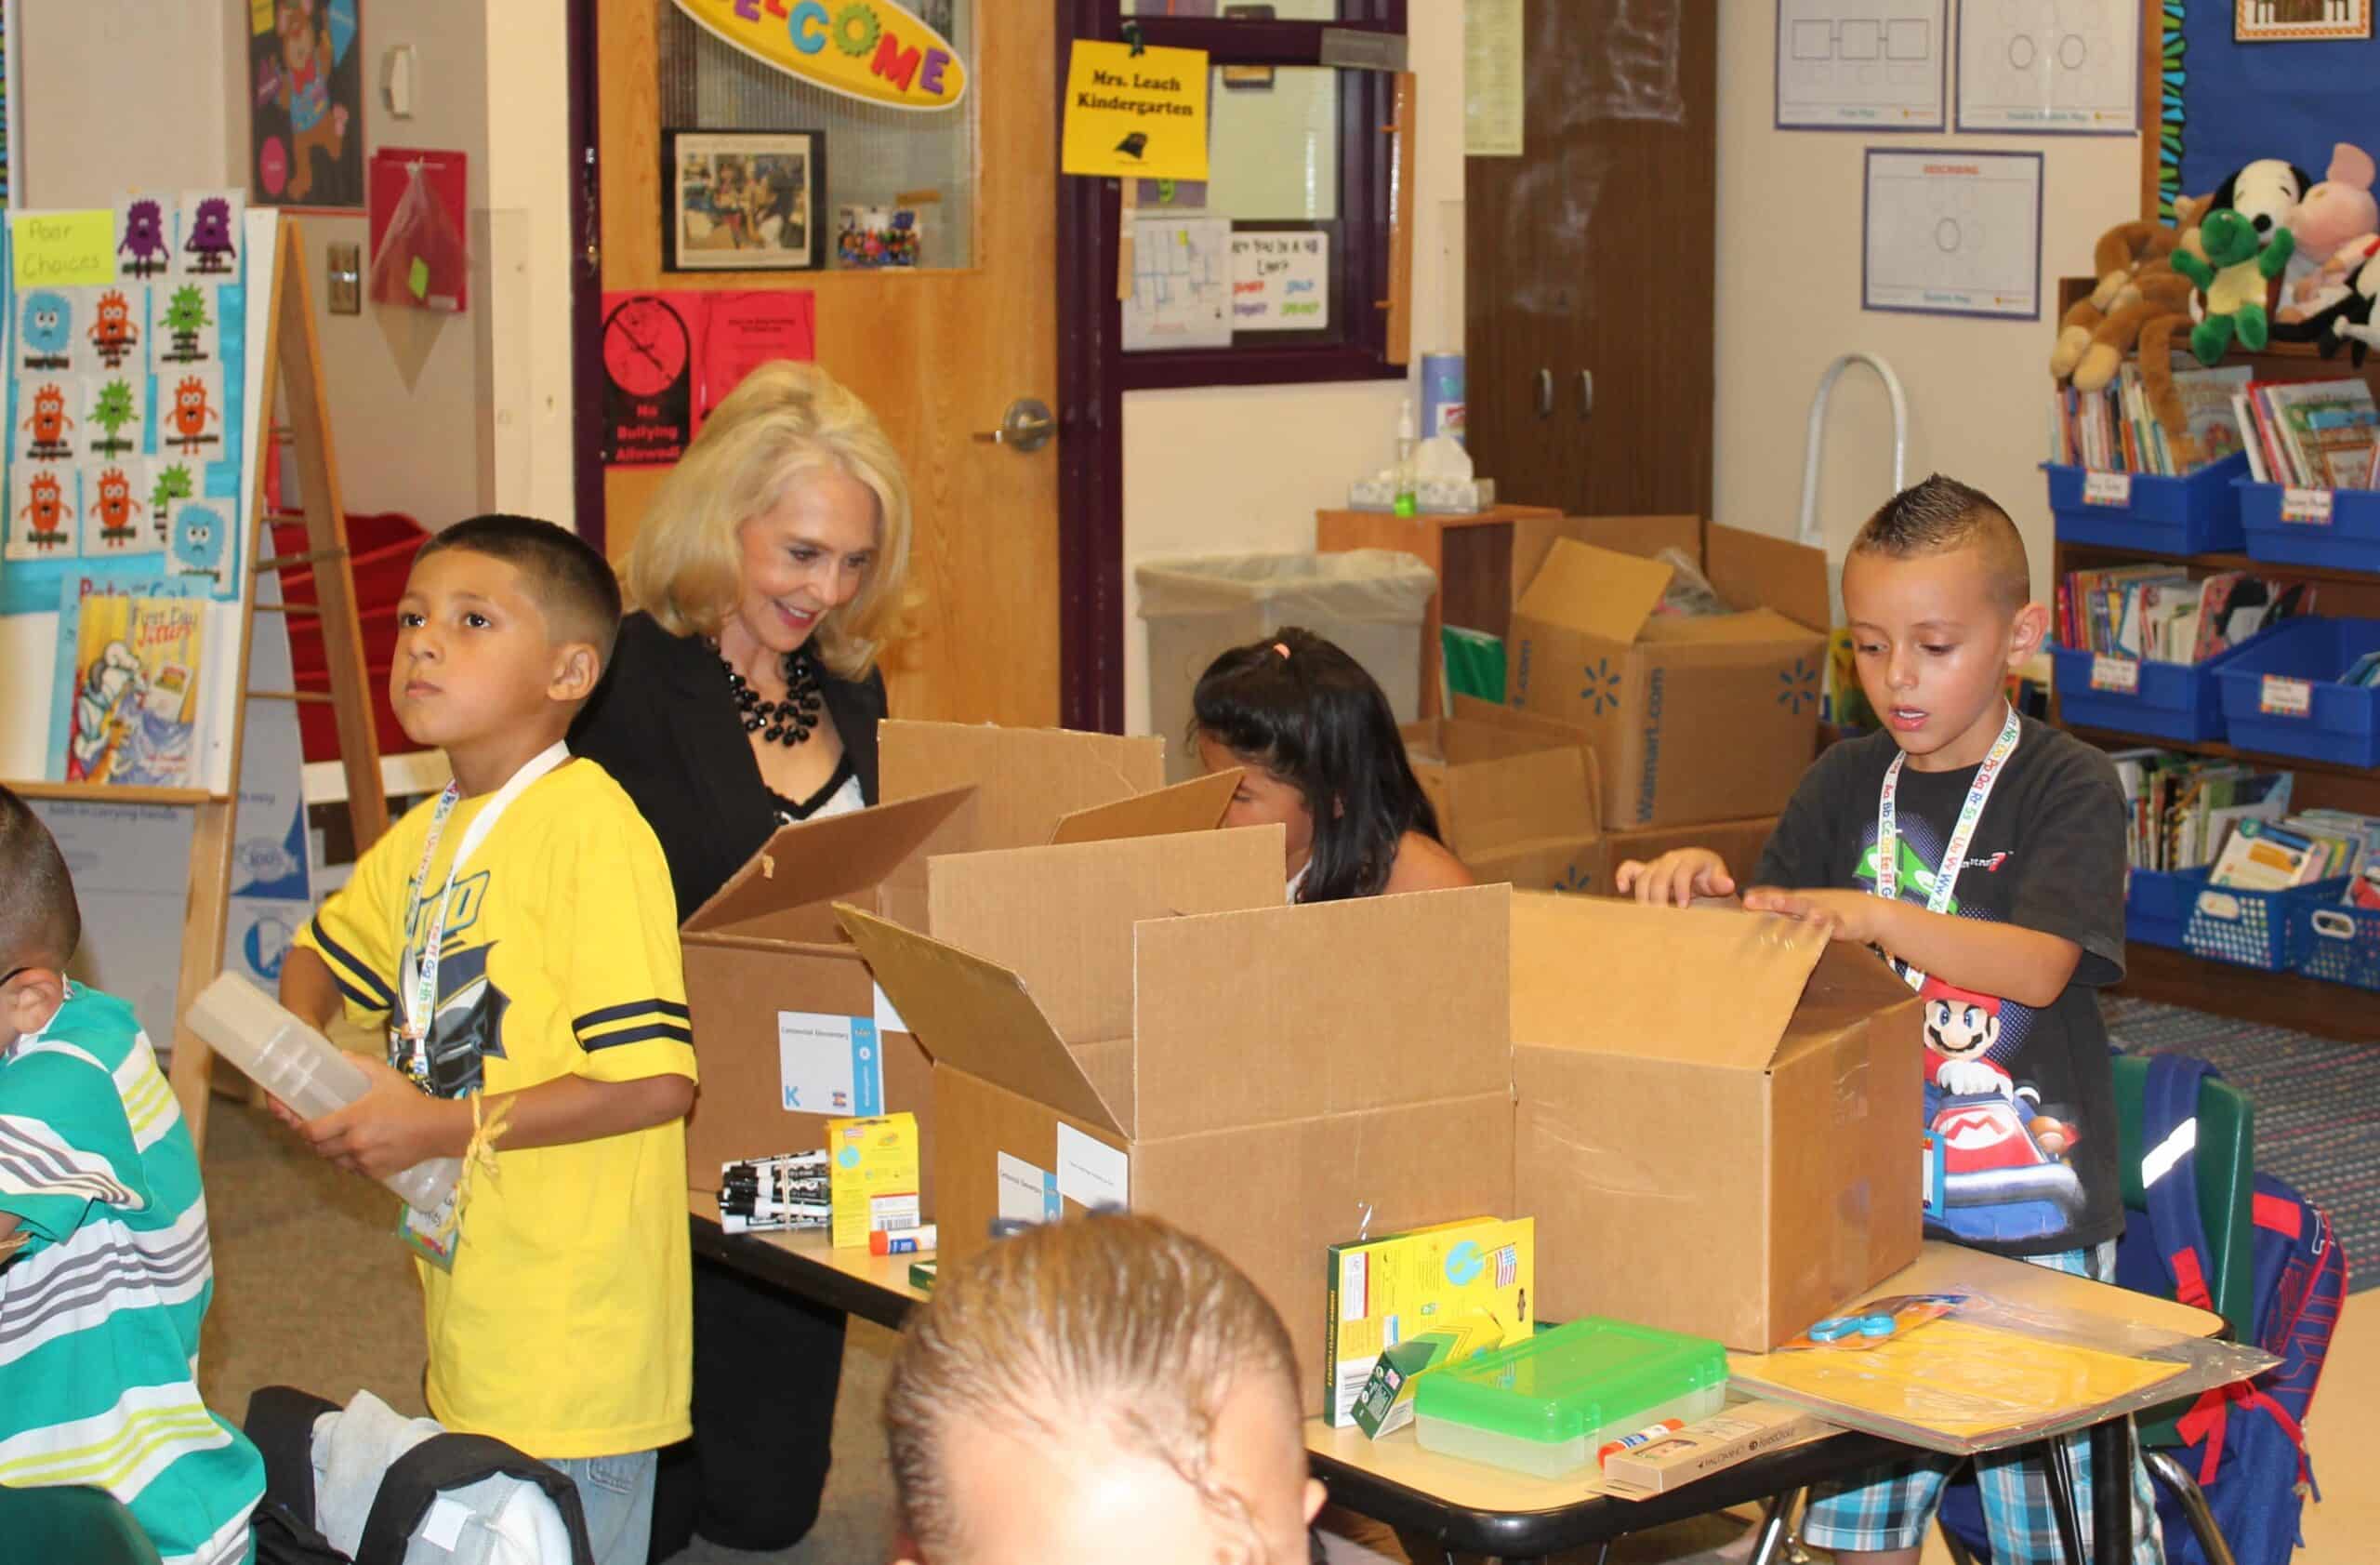 Karen McDivitt helps unpack donated school supplies